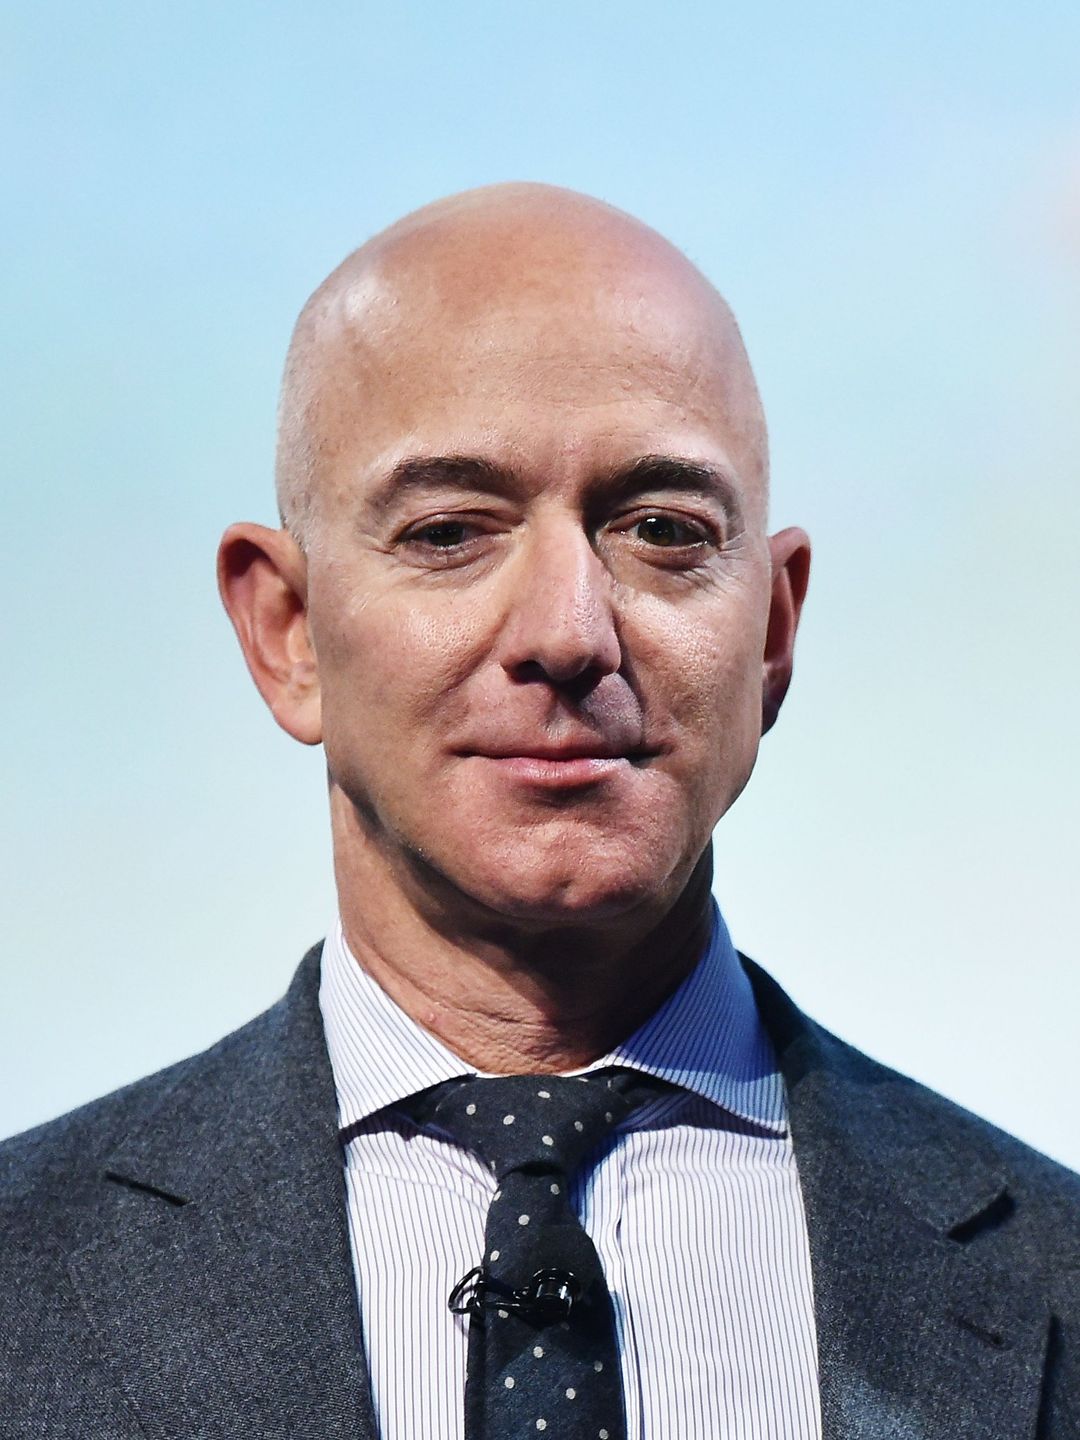 Jeff Bezos height